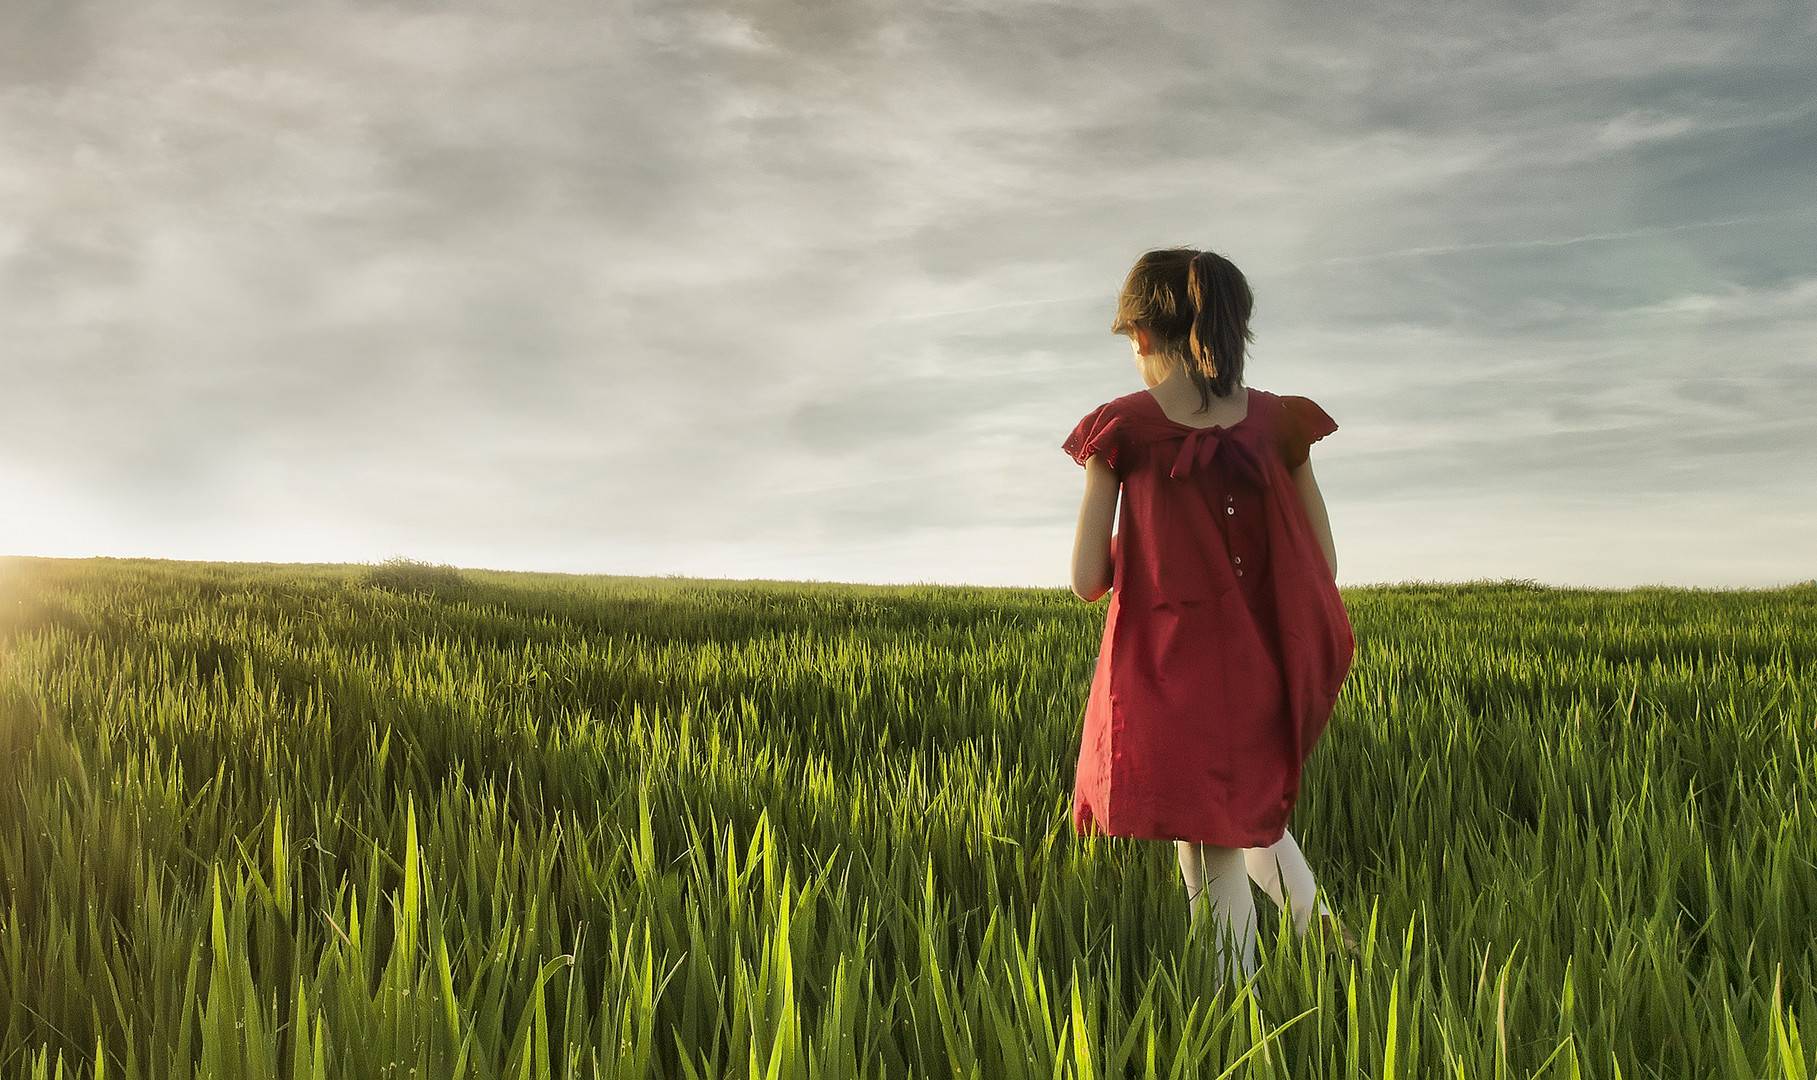 Girl in red dress in a green field